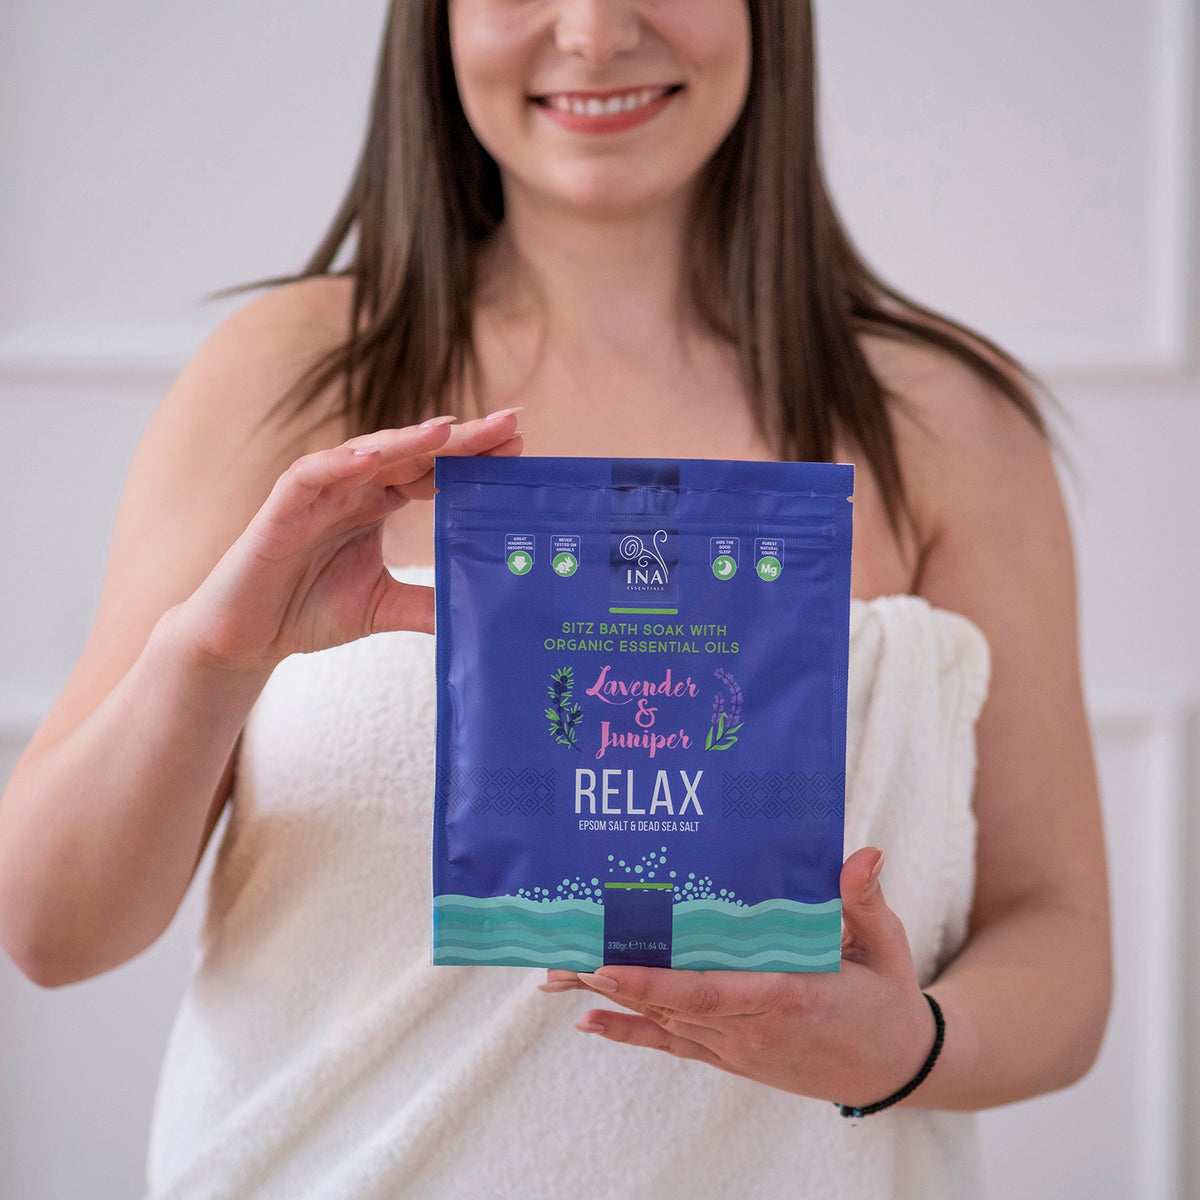 Relax - Sais de banho com Lavanda e Zimbro para Relaxamento e alívio do Stress